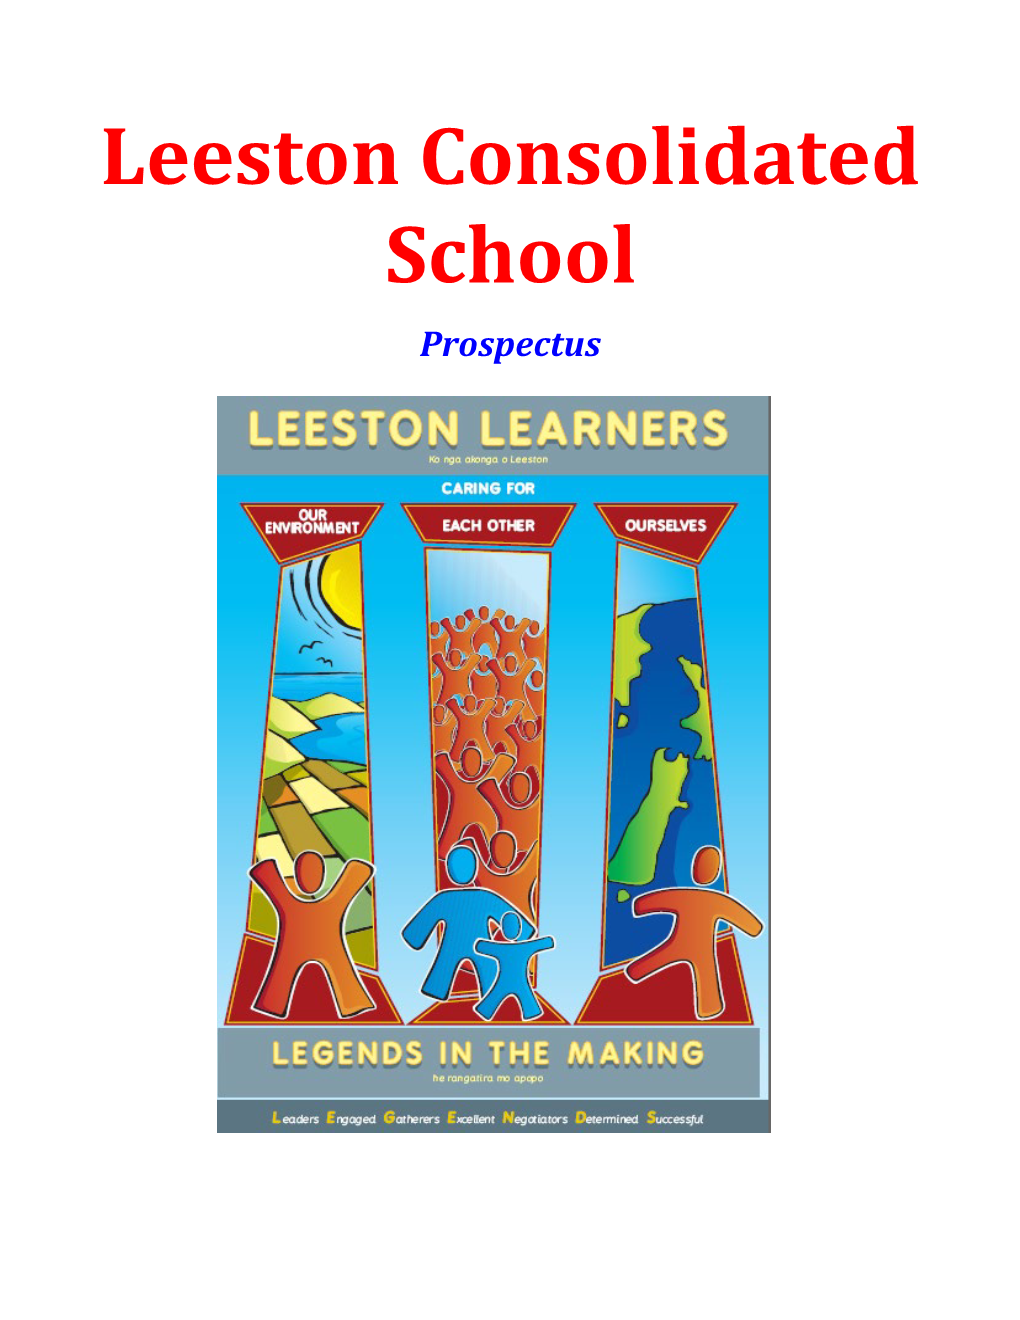 Leeston Consolidated School Staff